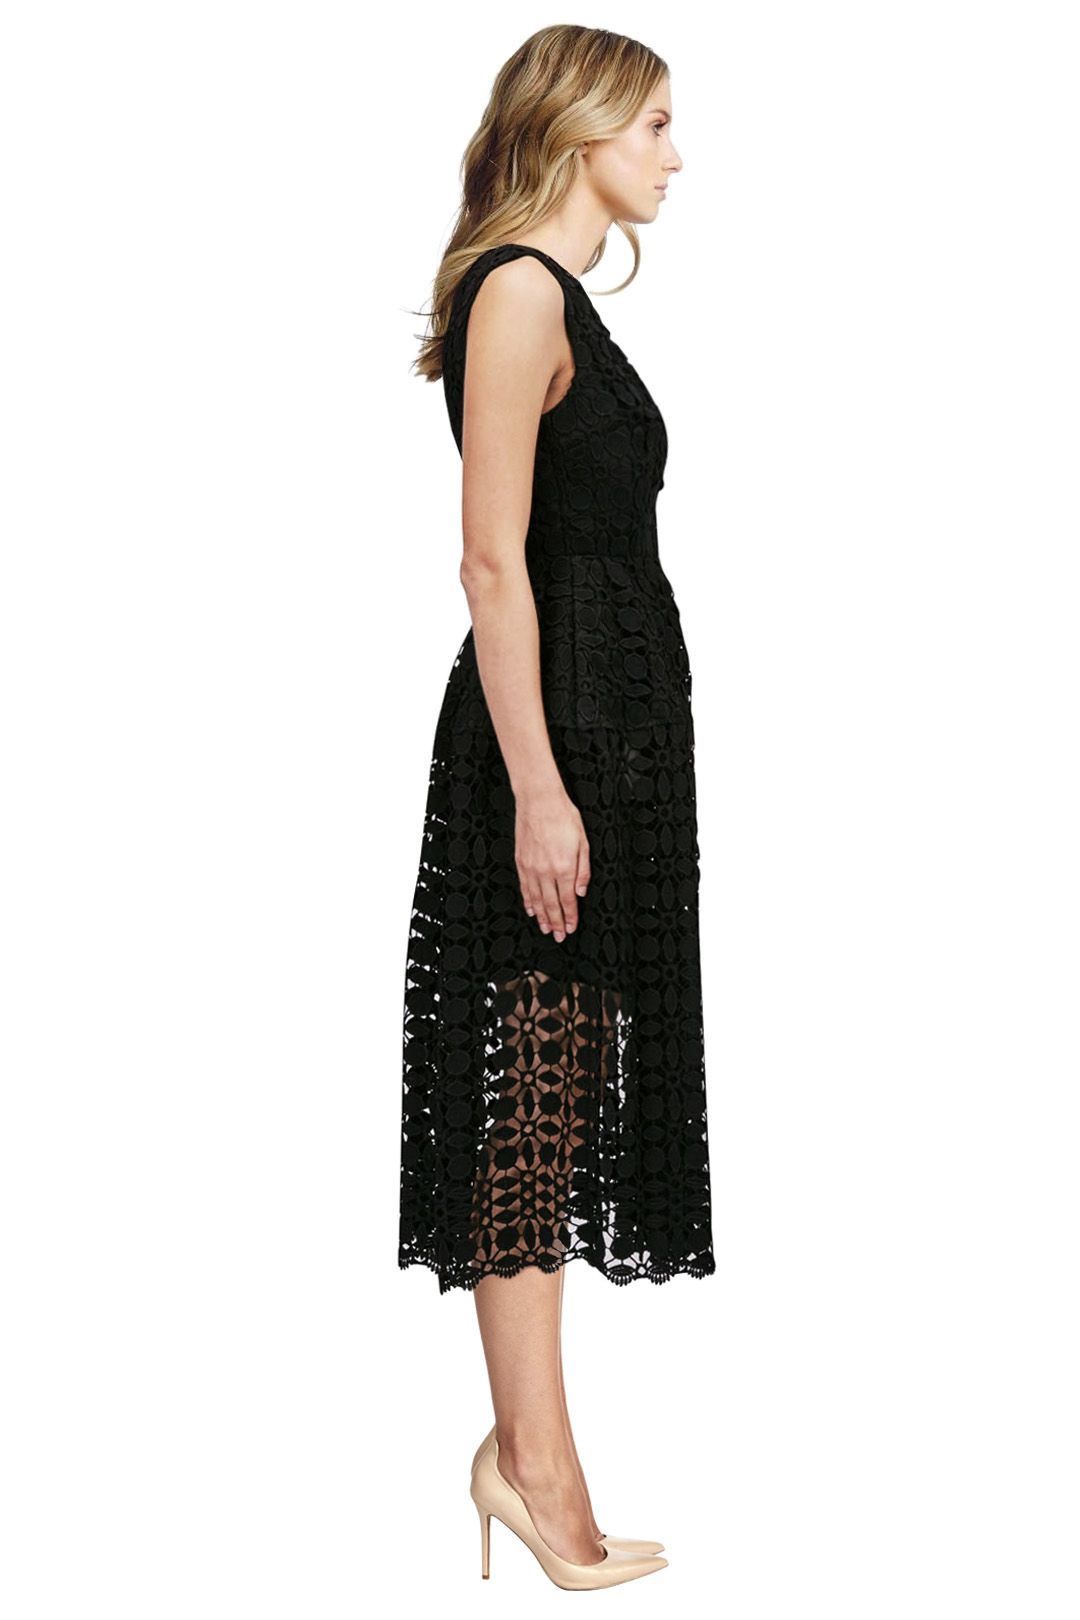 Mosaic Lace Ball Dress - Black - Side